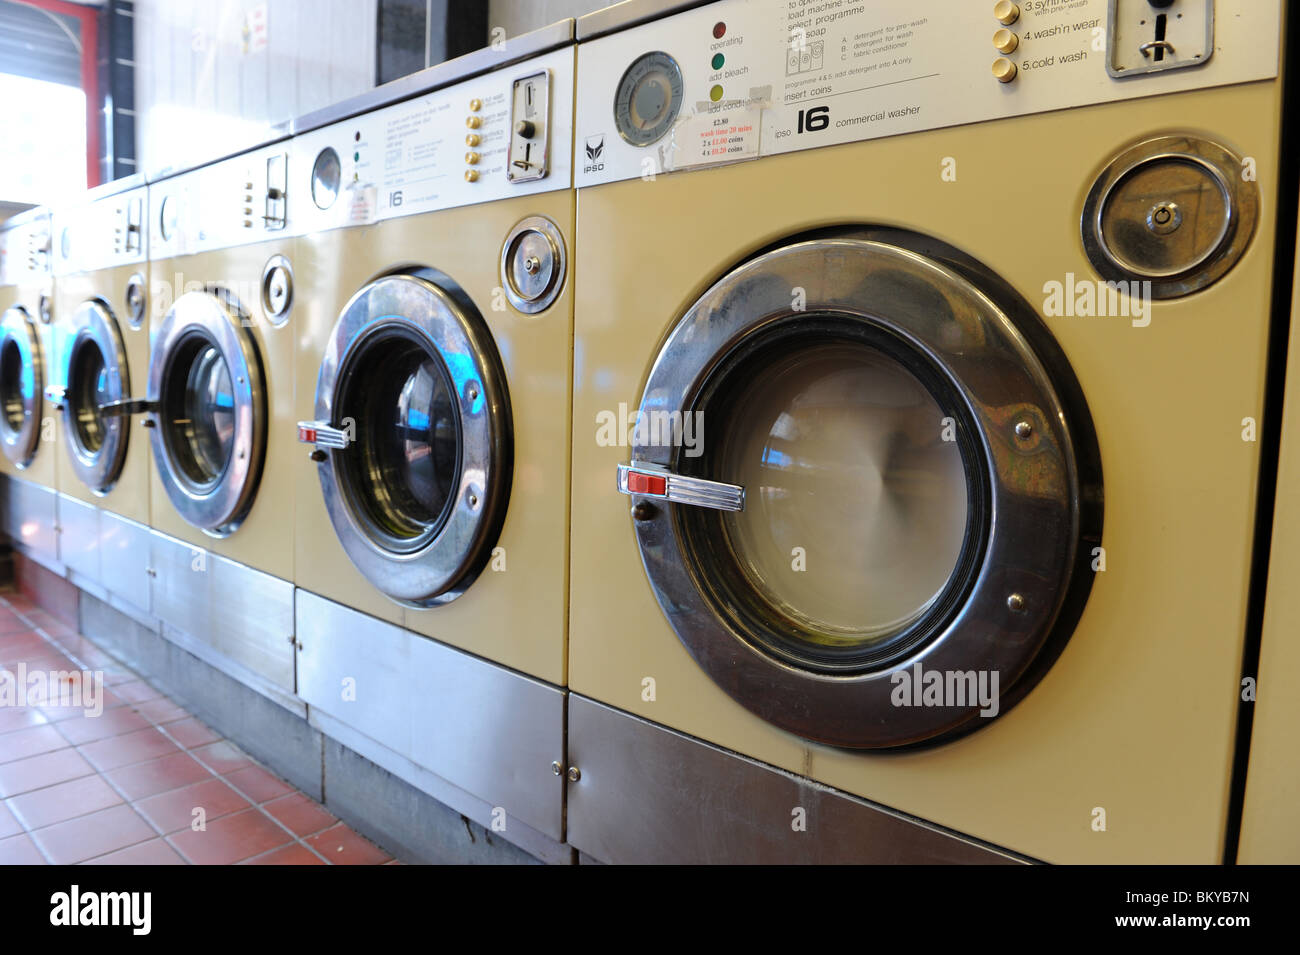 Washing machine at launderette England Uk Stock Photo